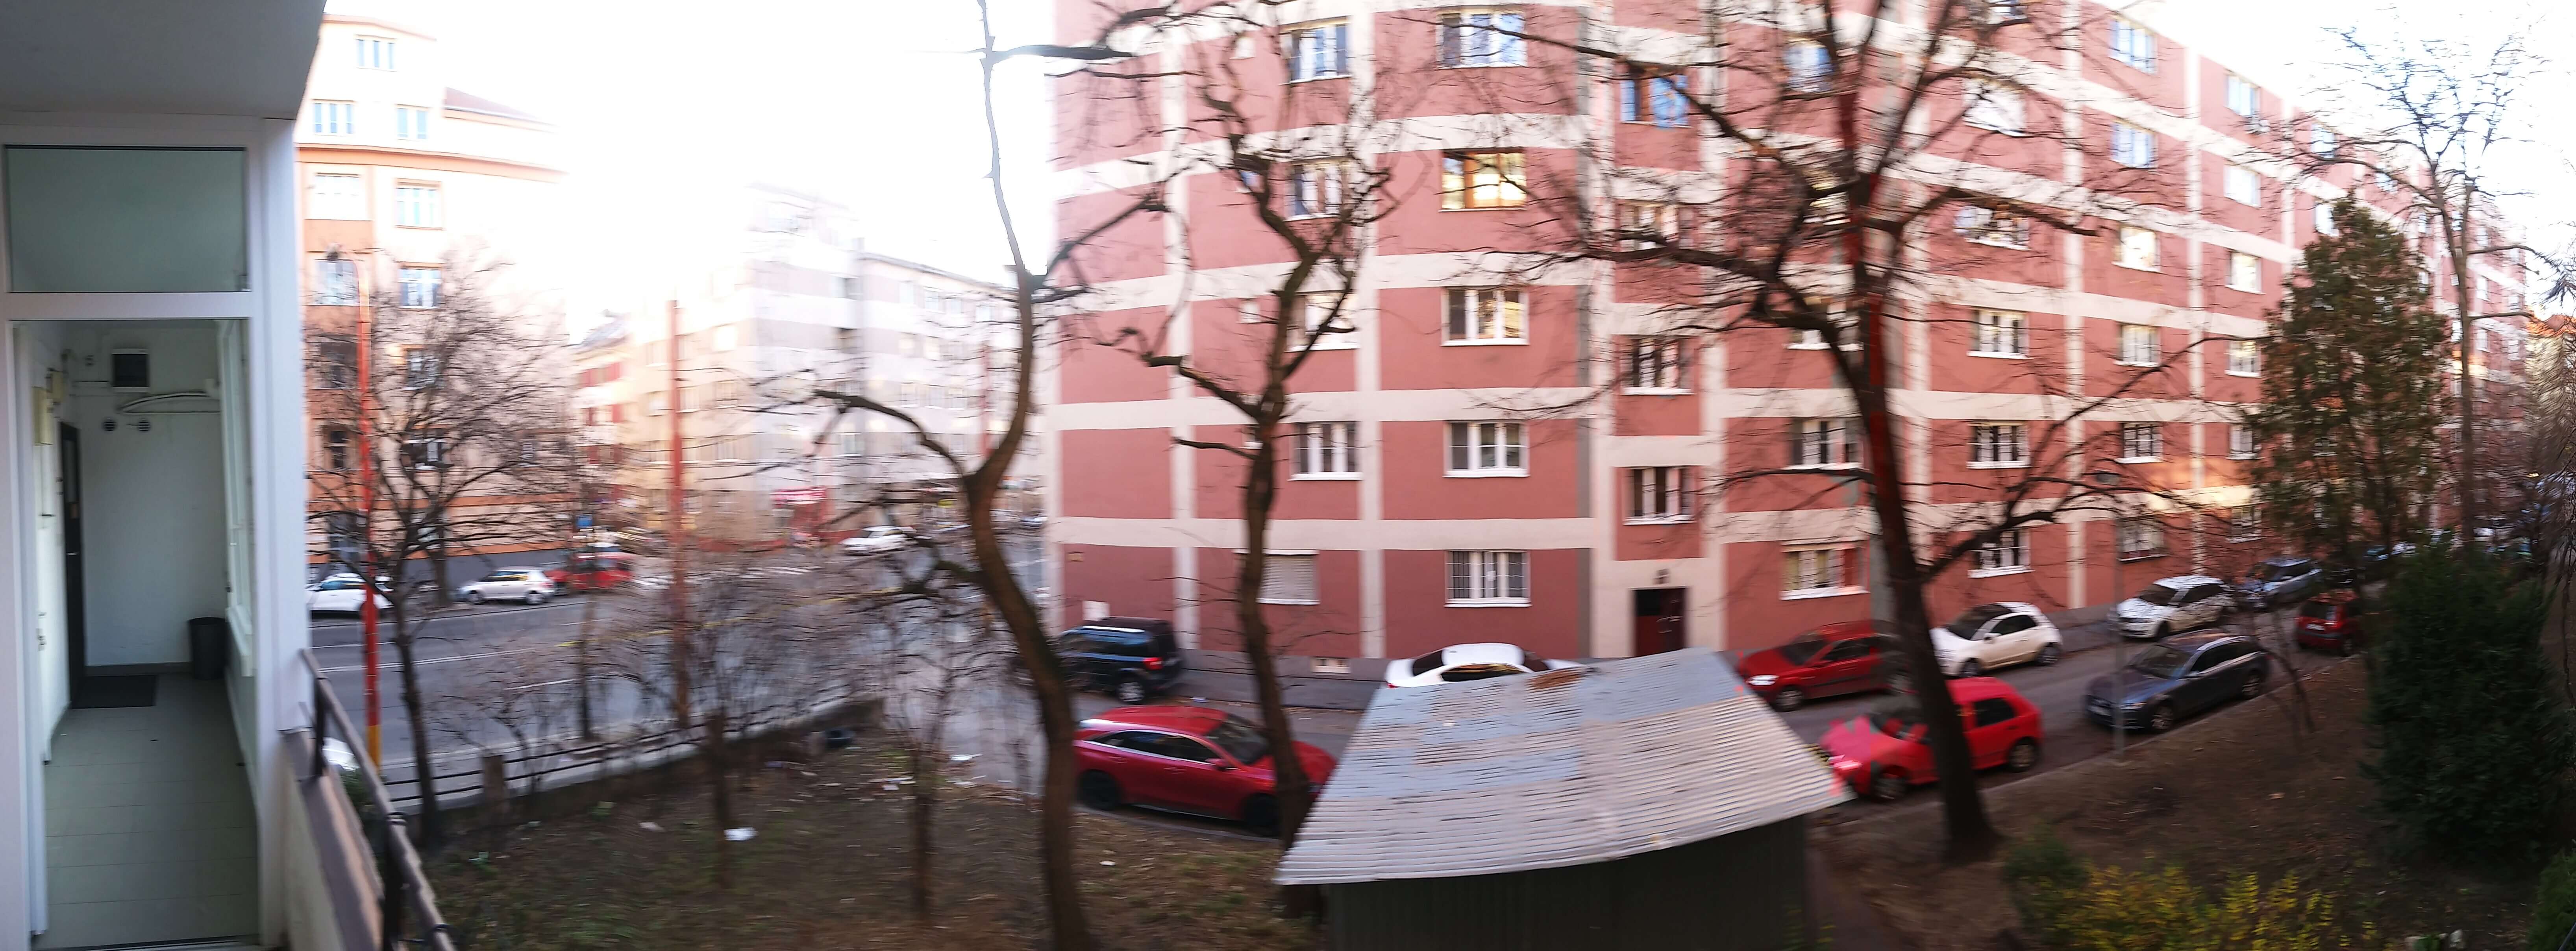 Prenajaté: Prenájom jednej izby v 2 izb. byte, staré mesto, Šancová ulica, Bratislava, 80m2, zariadený-32